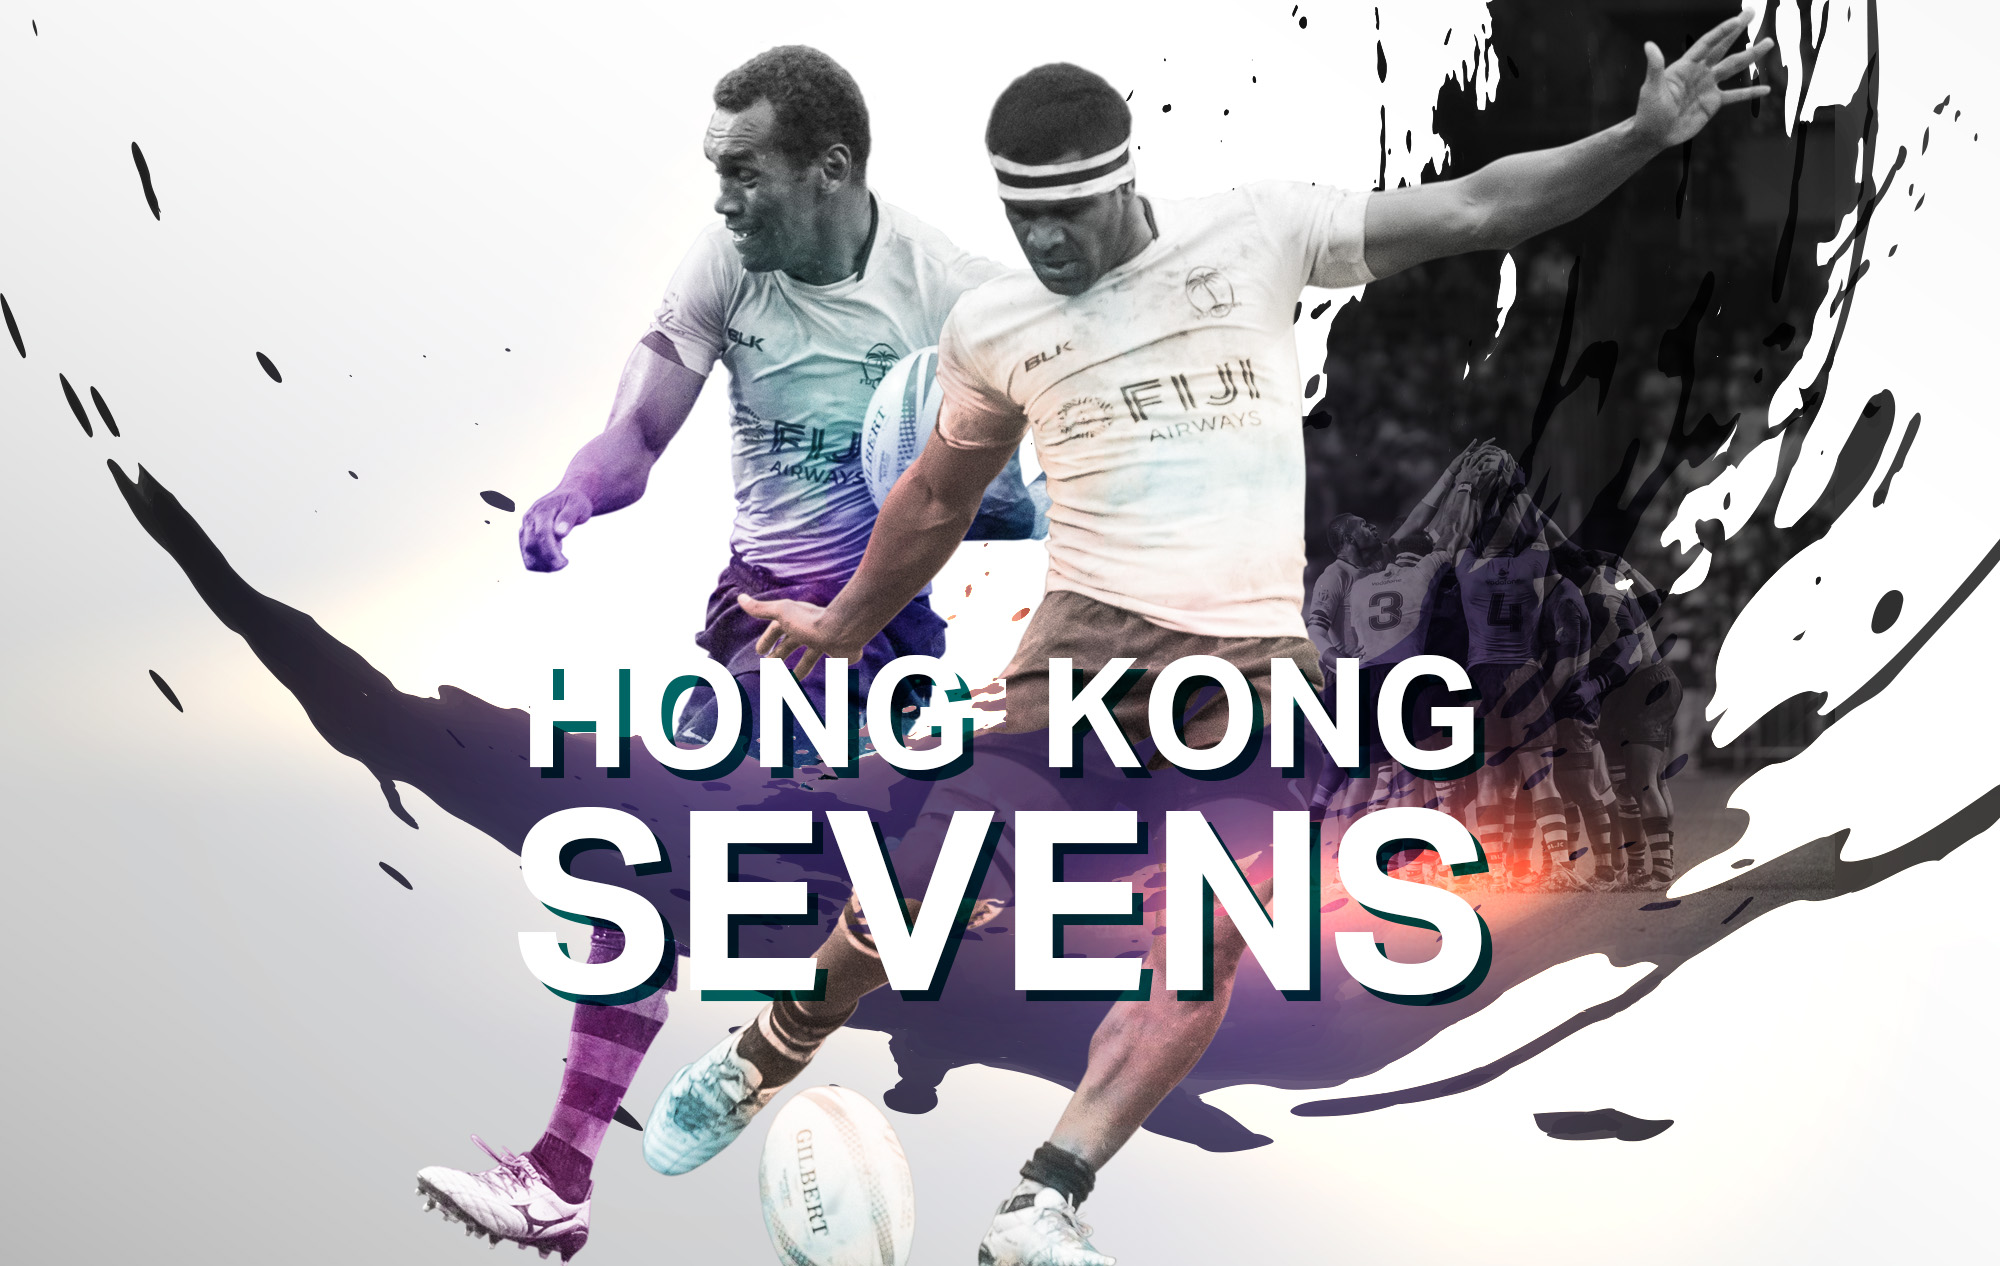 Hong Kong Sevens rugby tournament Fiji